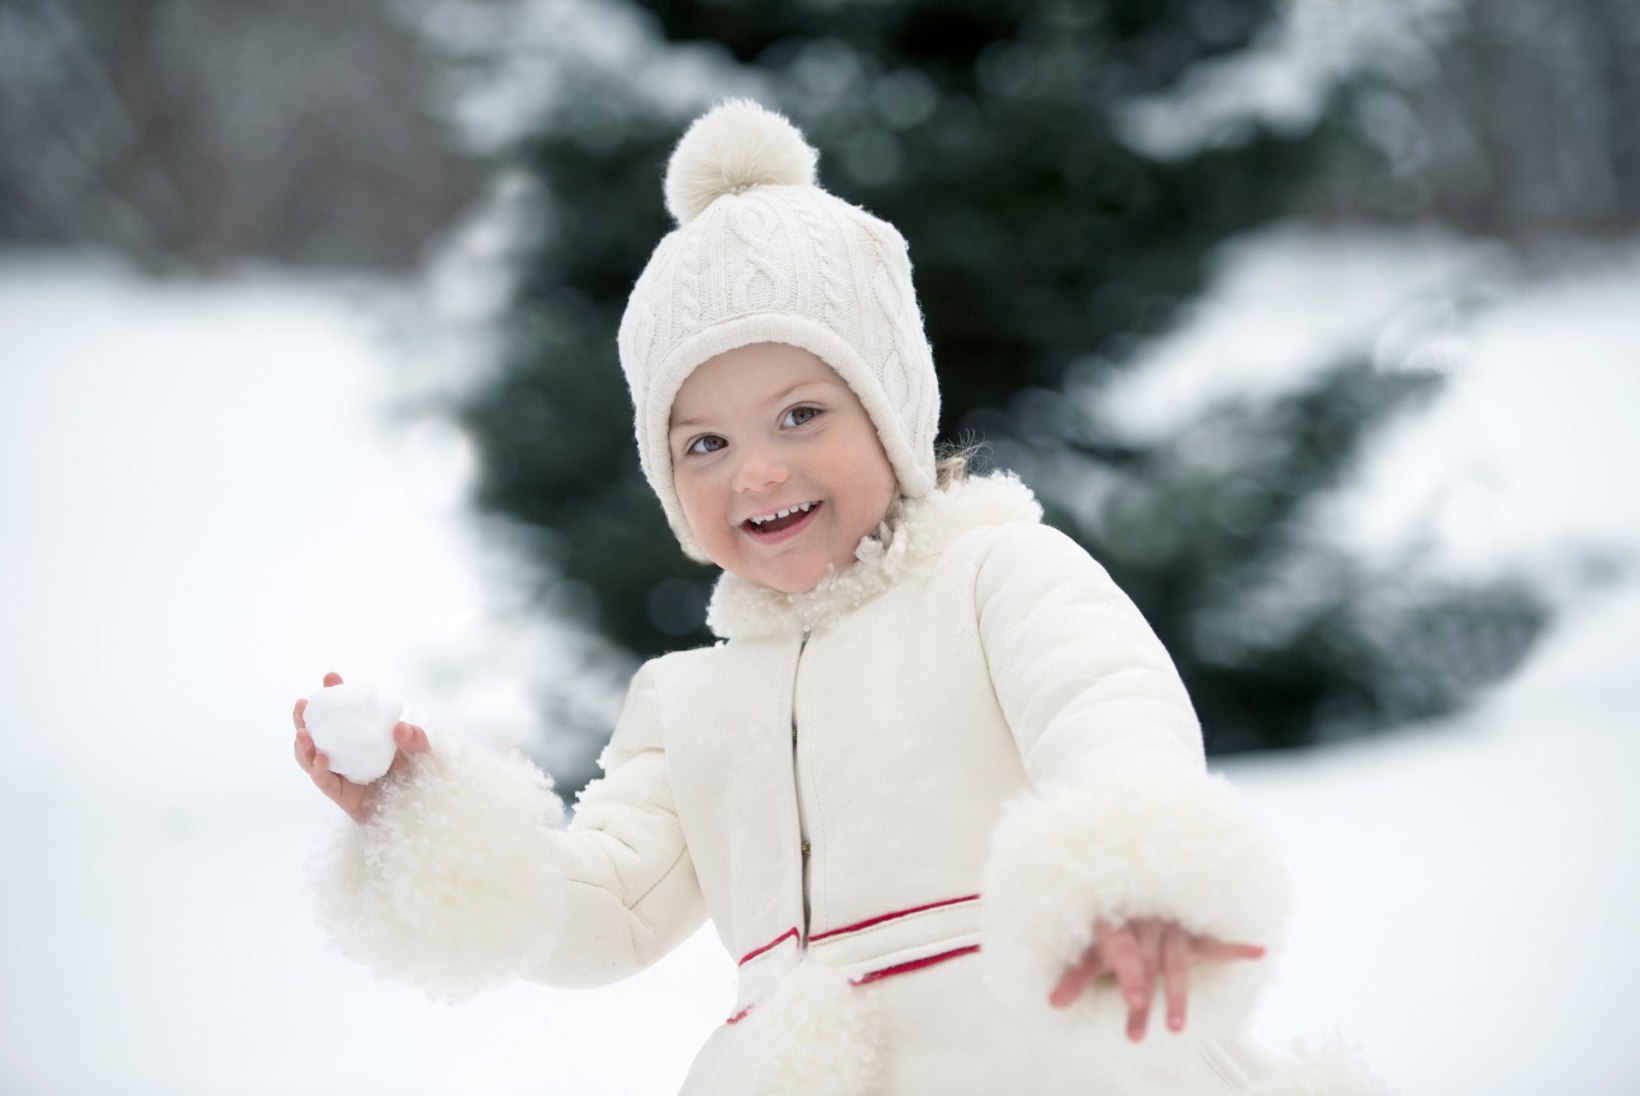 FOTOD: Rootsi väike printsess tähistab täna 3. sünnipäeva